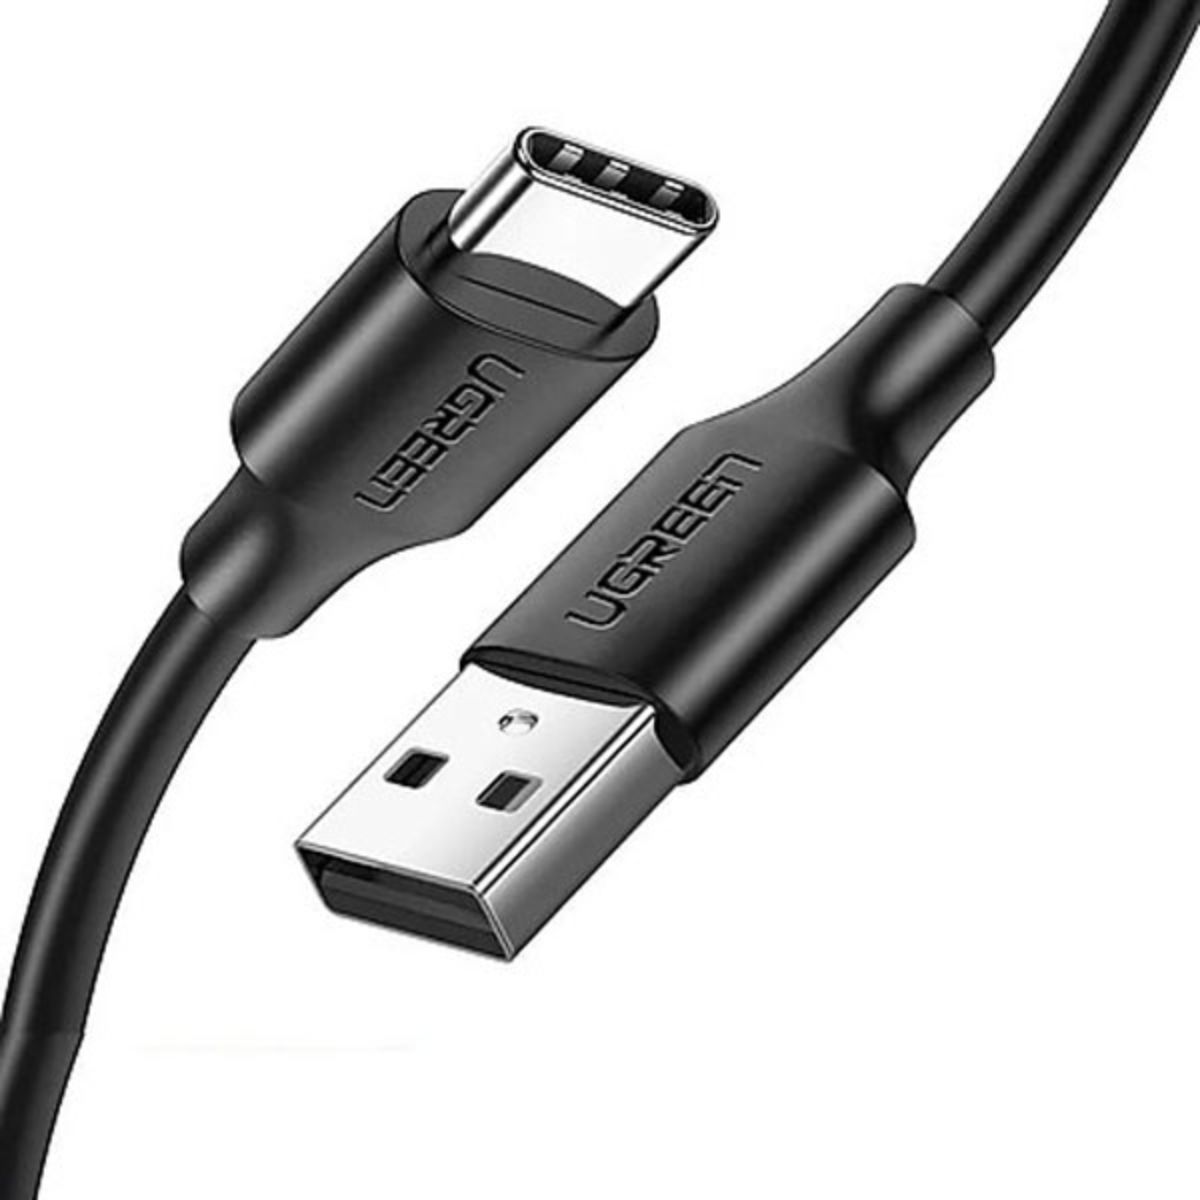 Cáp sạc USB 2.0 sang USB type C Ugreen US287, 60117 chiều dài 1,5m, màu đen